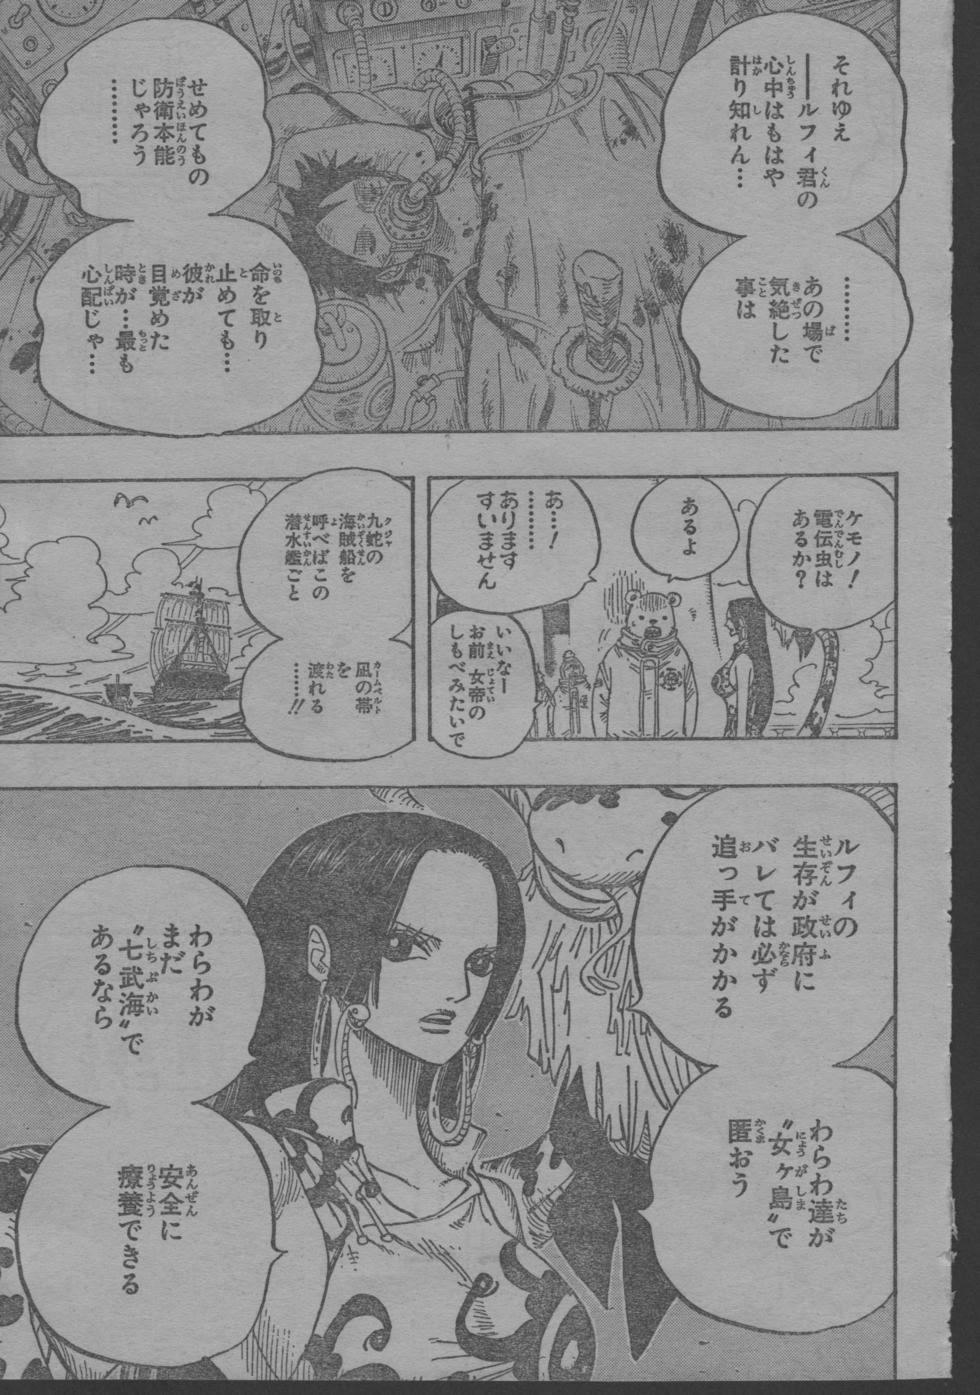 ワンピース One Piece 第581話 忍びよる未来 ネタバレ感想 しあわせのマテリア